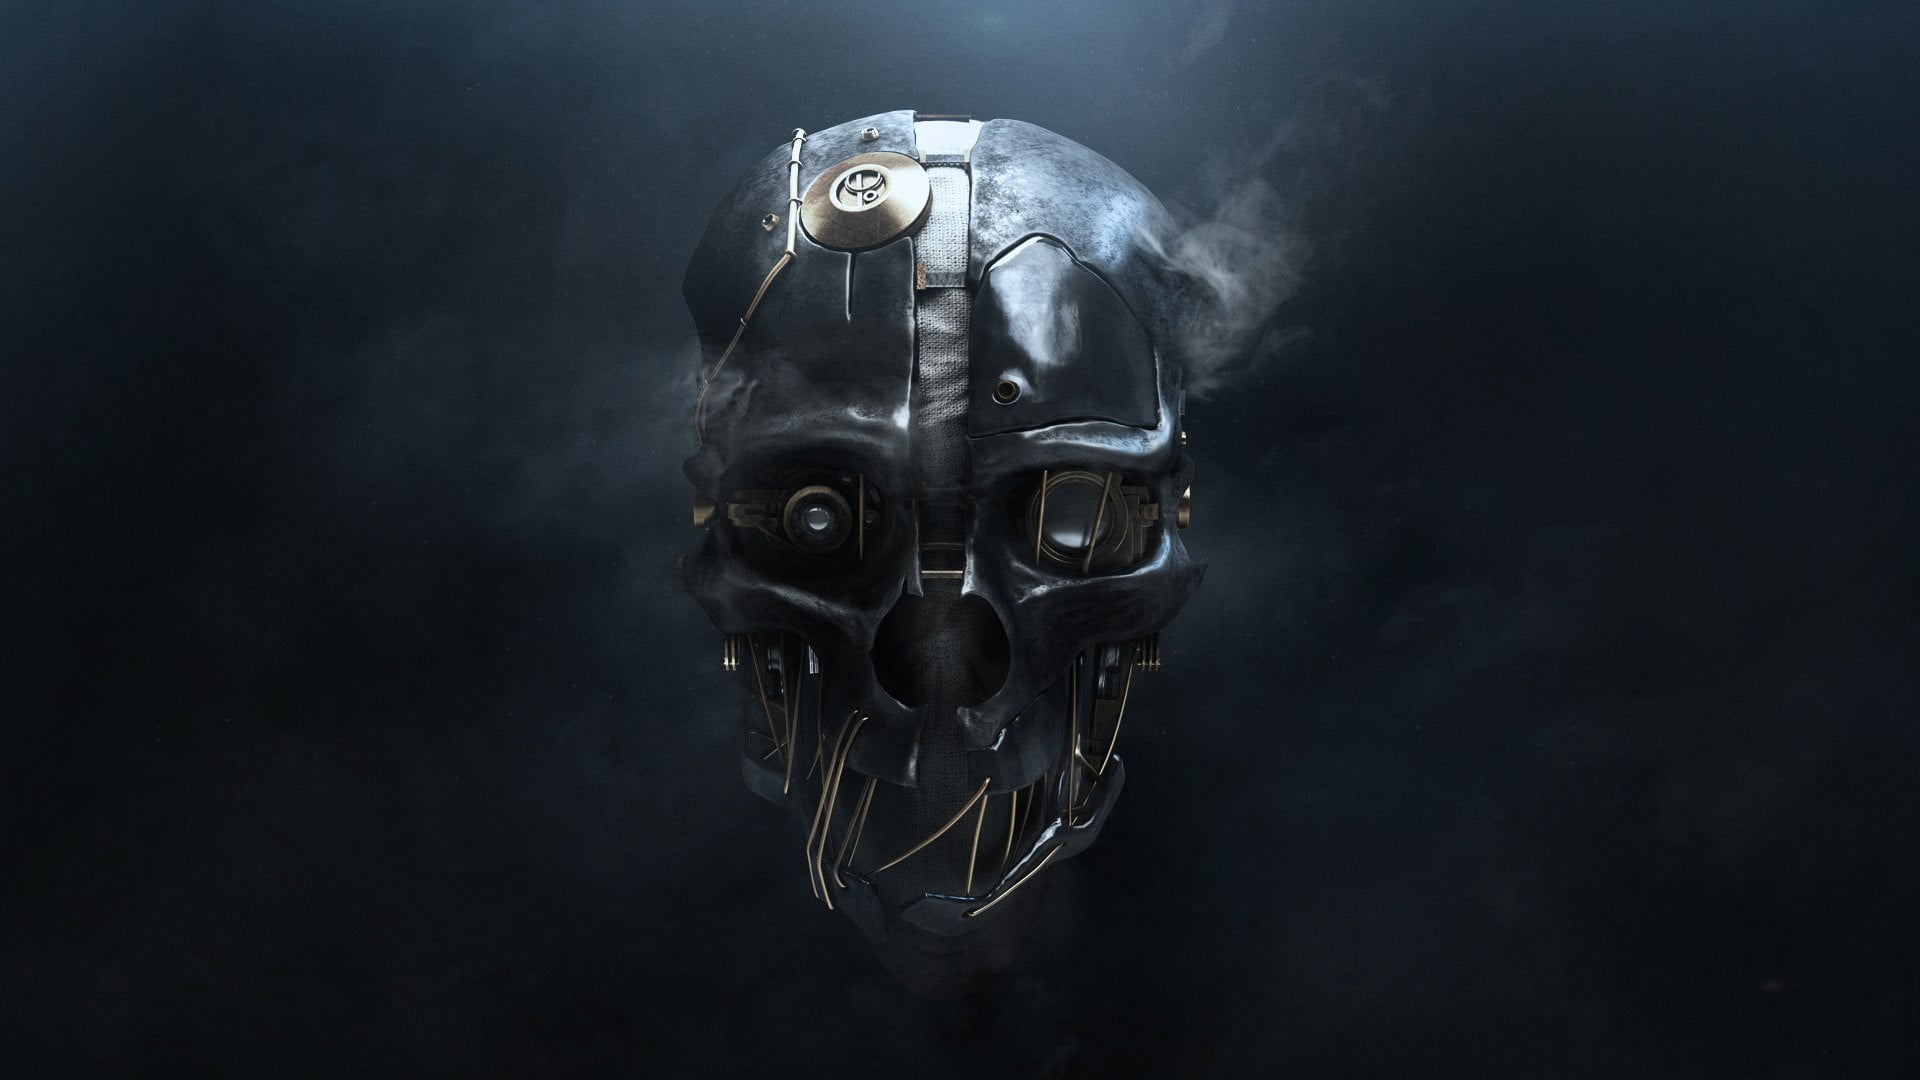 gray skull illustration, digital art, simple background, 3D, metal